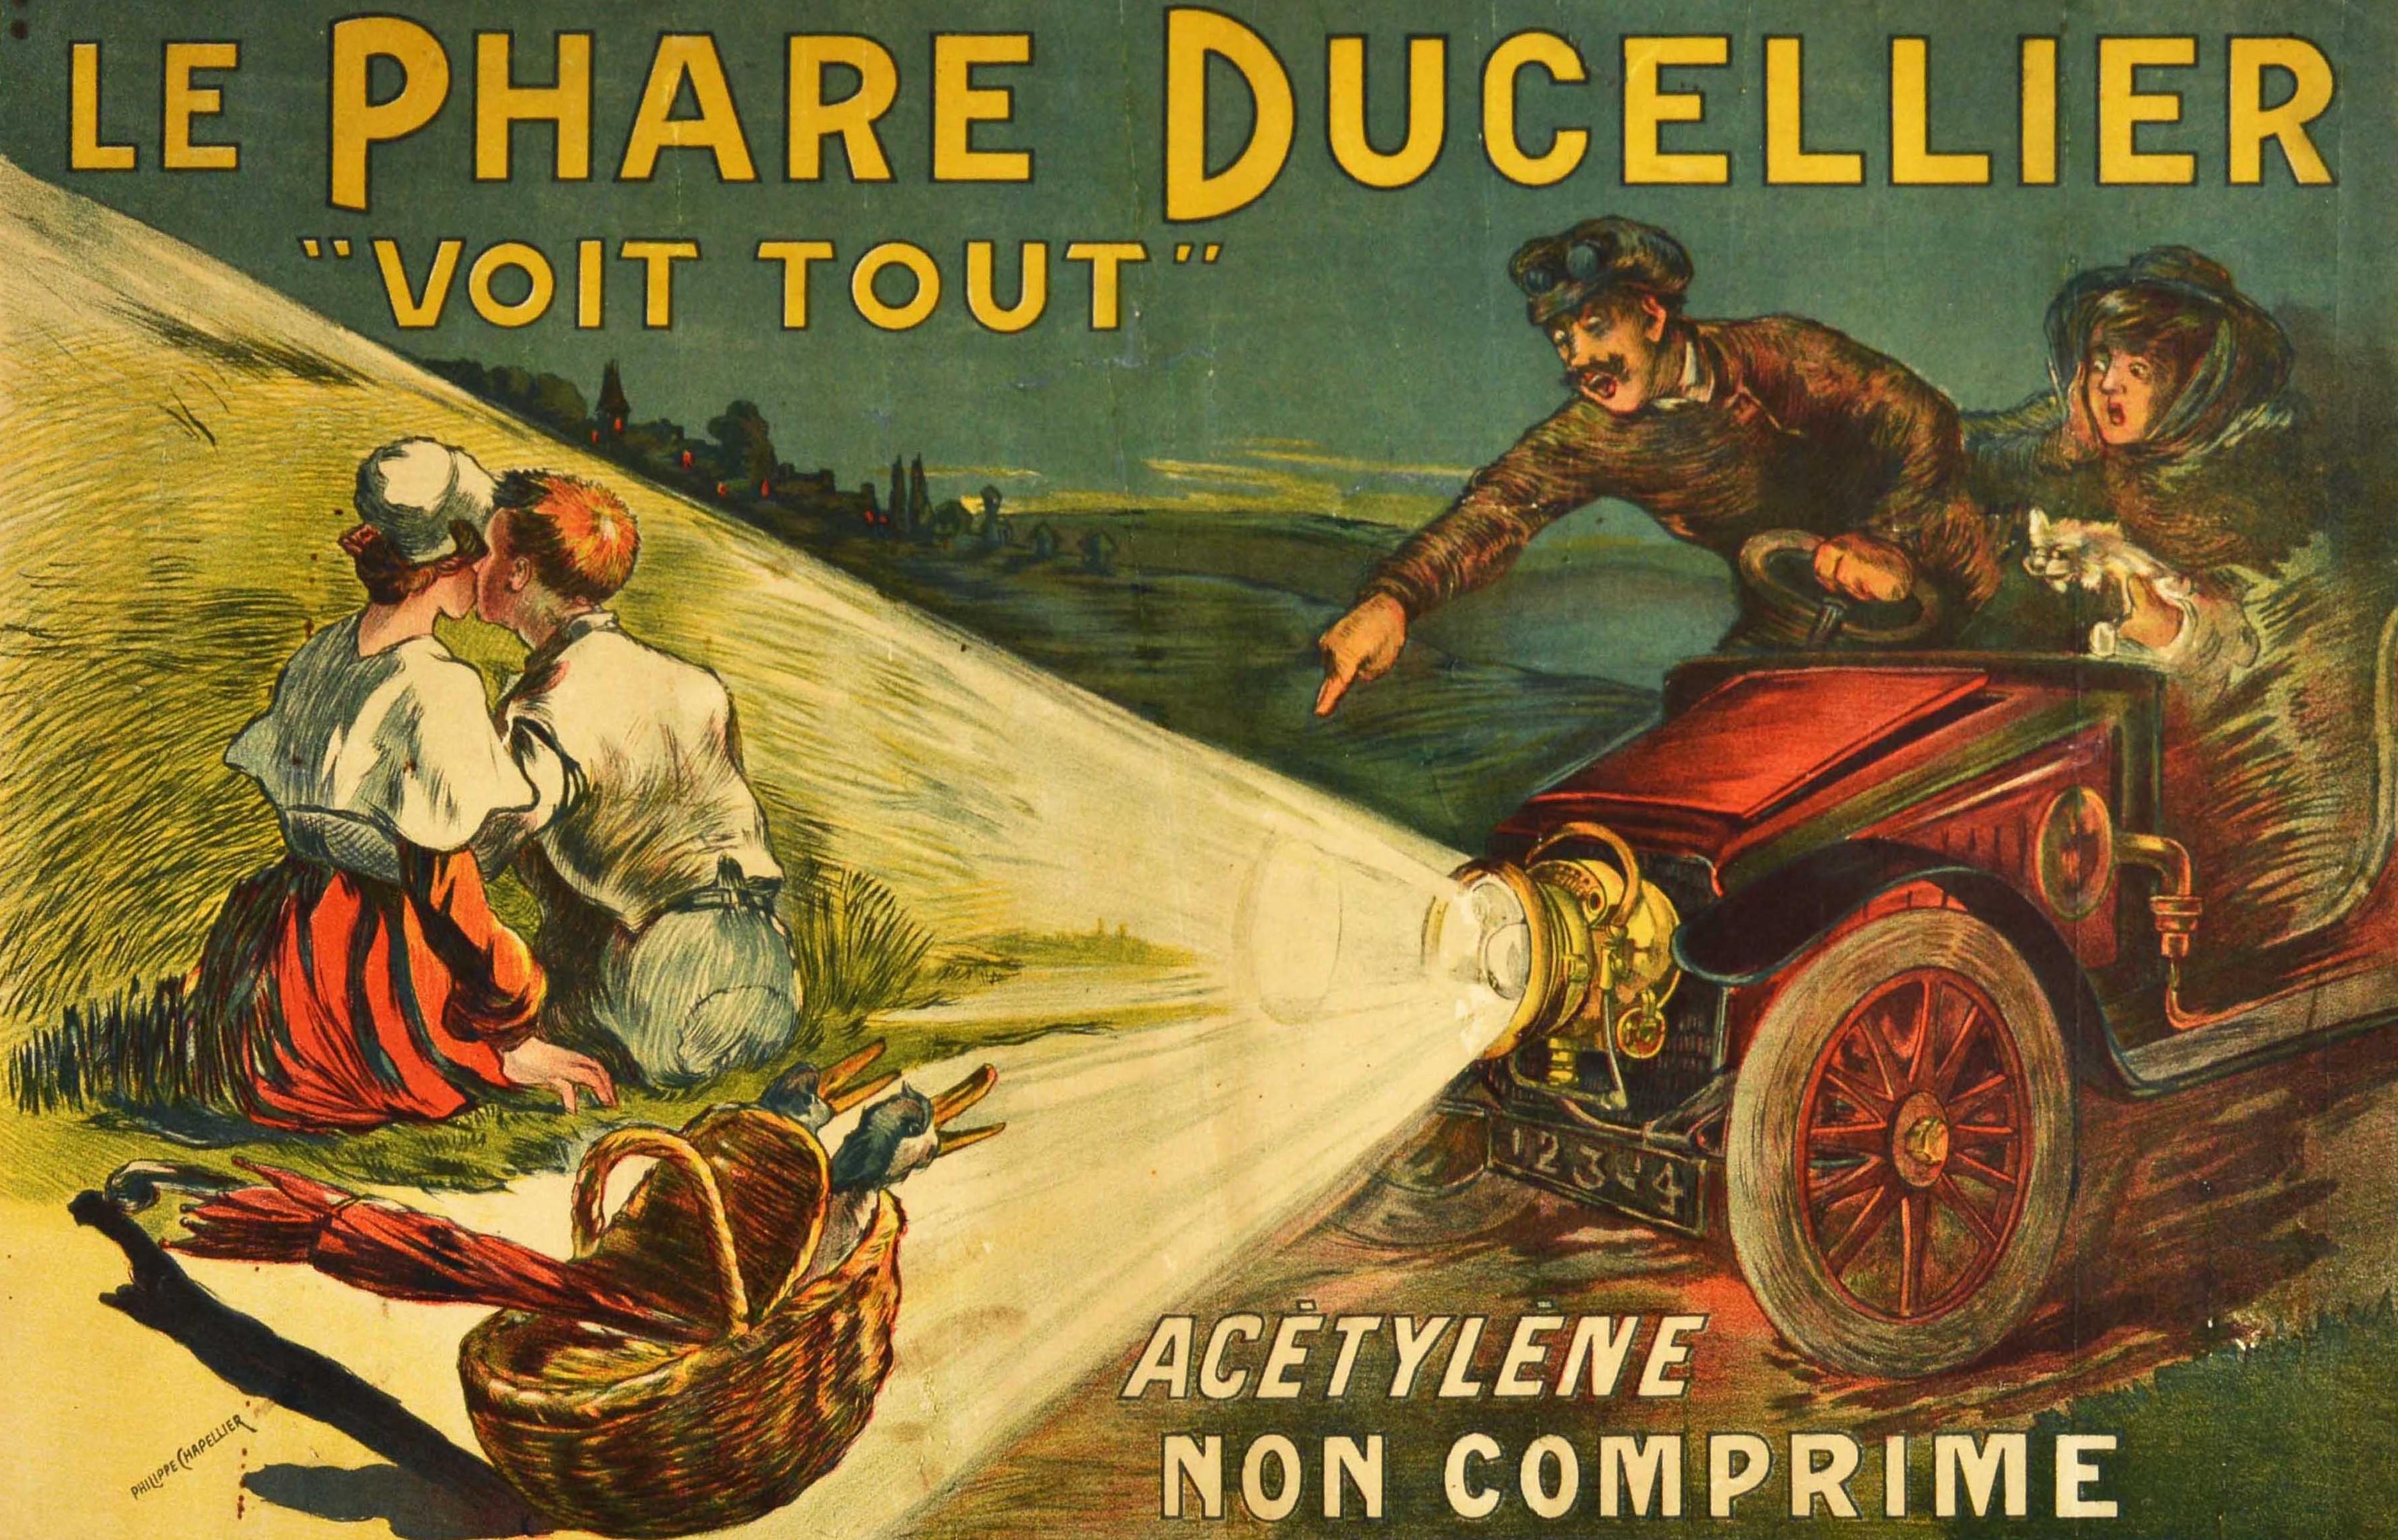 Originales antikes Werbeplakat für Ducellier Lights - Le Phare Ducellier 